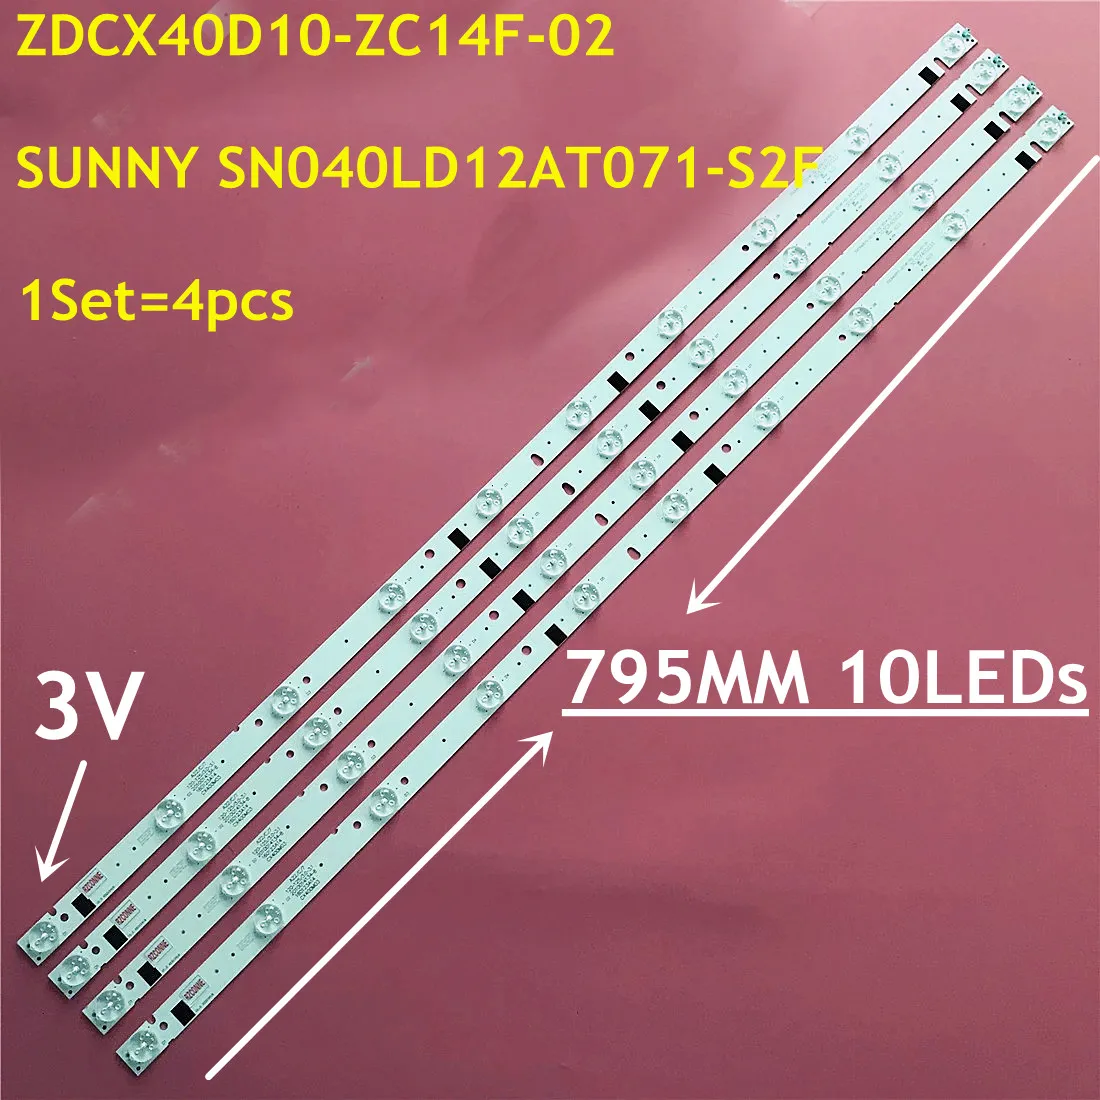 5kit=20db 795mm ED Háttérvilágítás szalag 10lamp ZDCX40D10-ZC14F-02 SUN NY SN040LD12AT071-S2F V400HJ6-PE1/V390HJ5-X